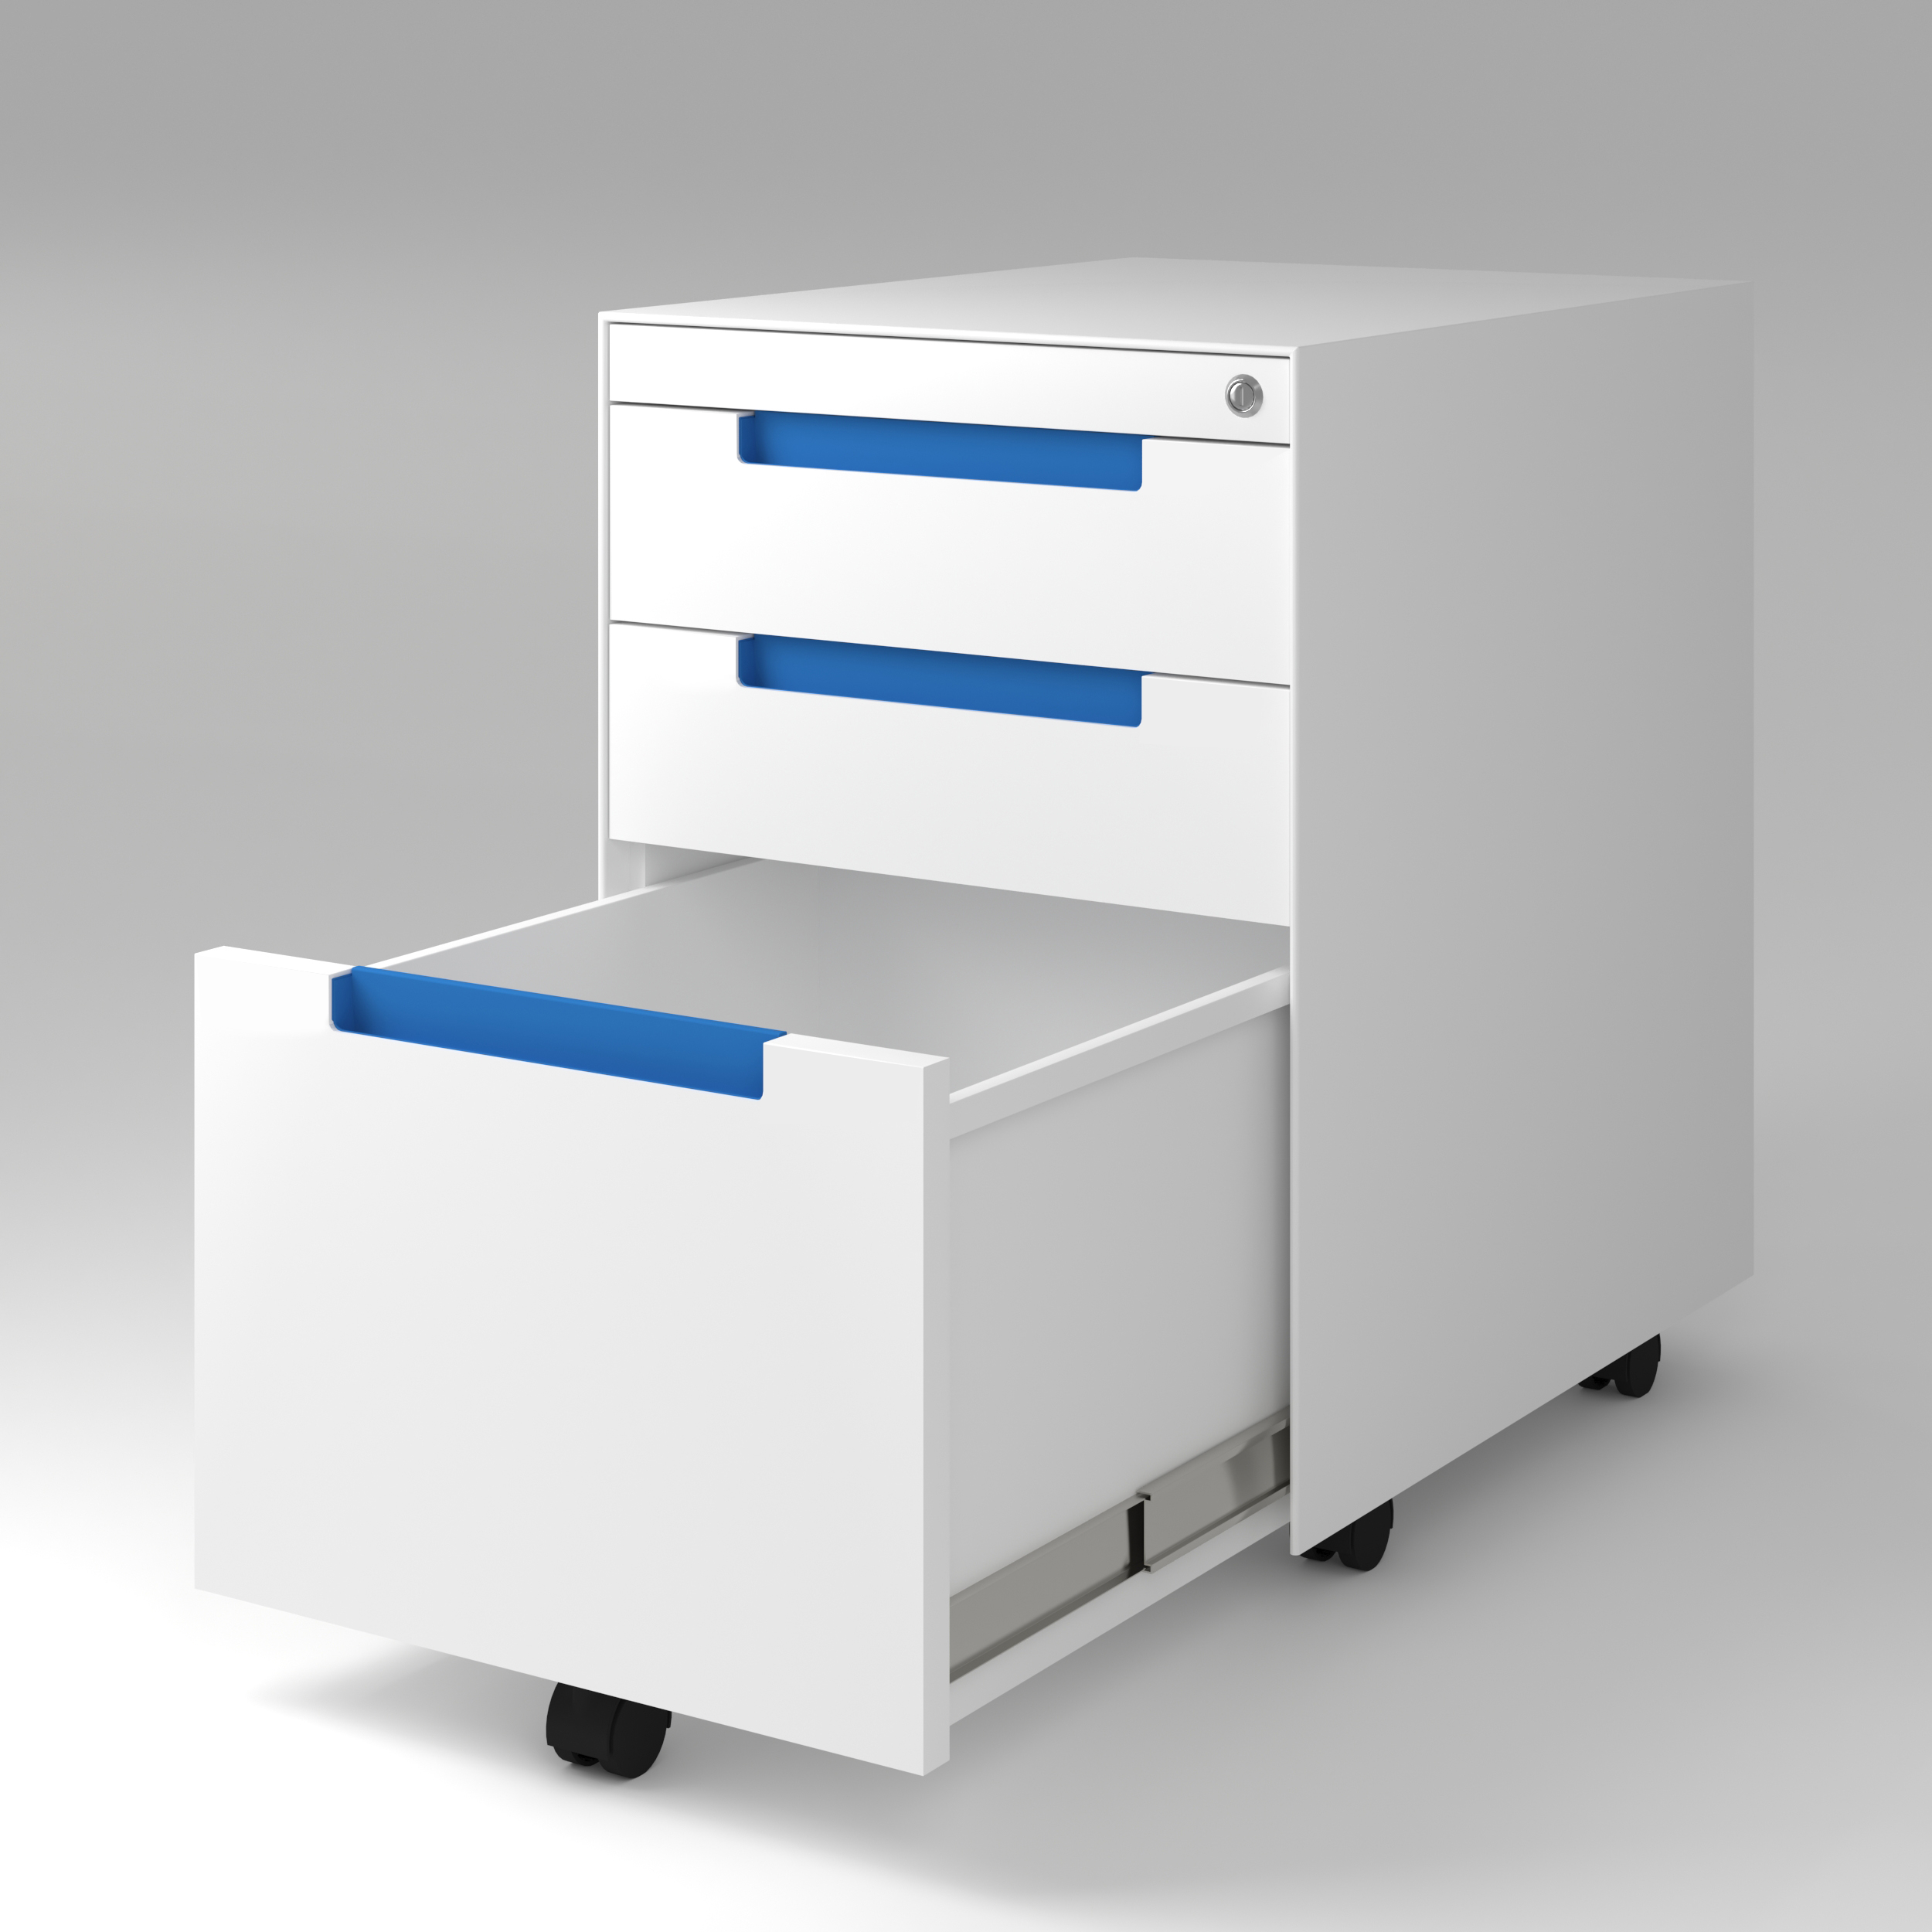 3 drawers metal storage mobile pedestal 